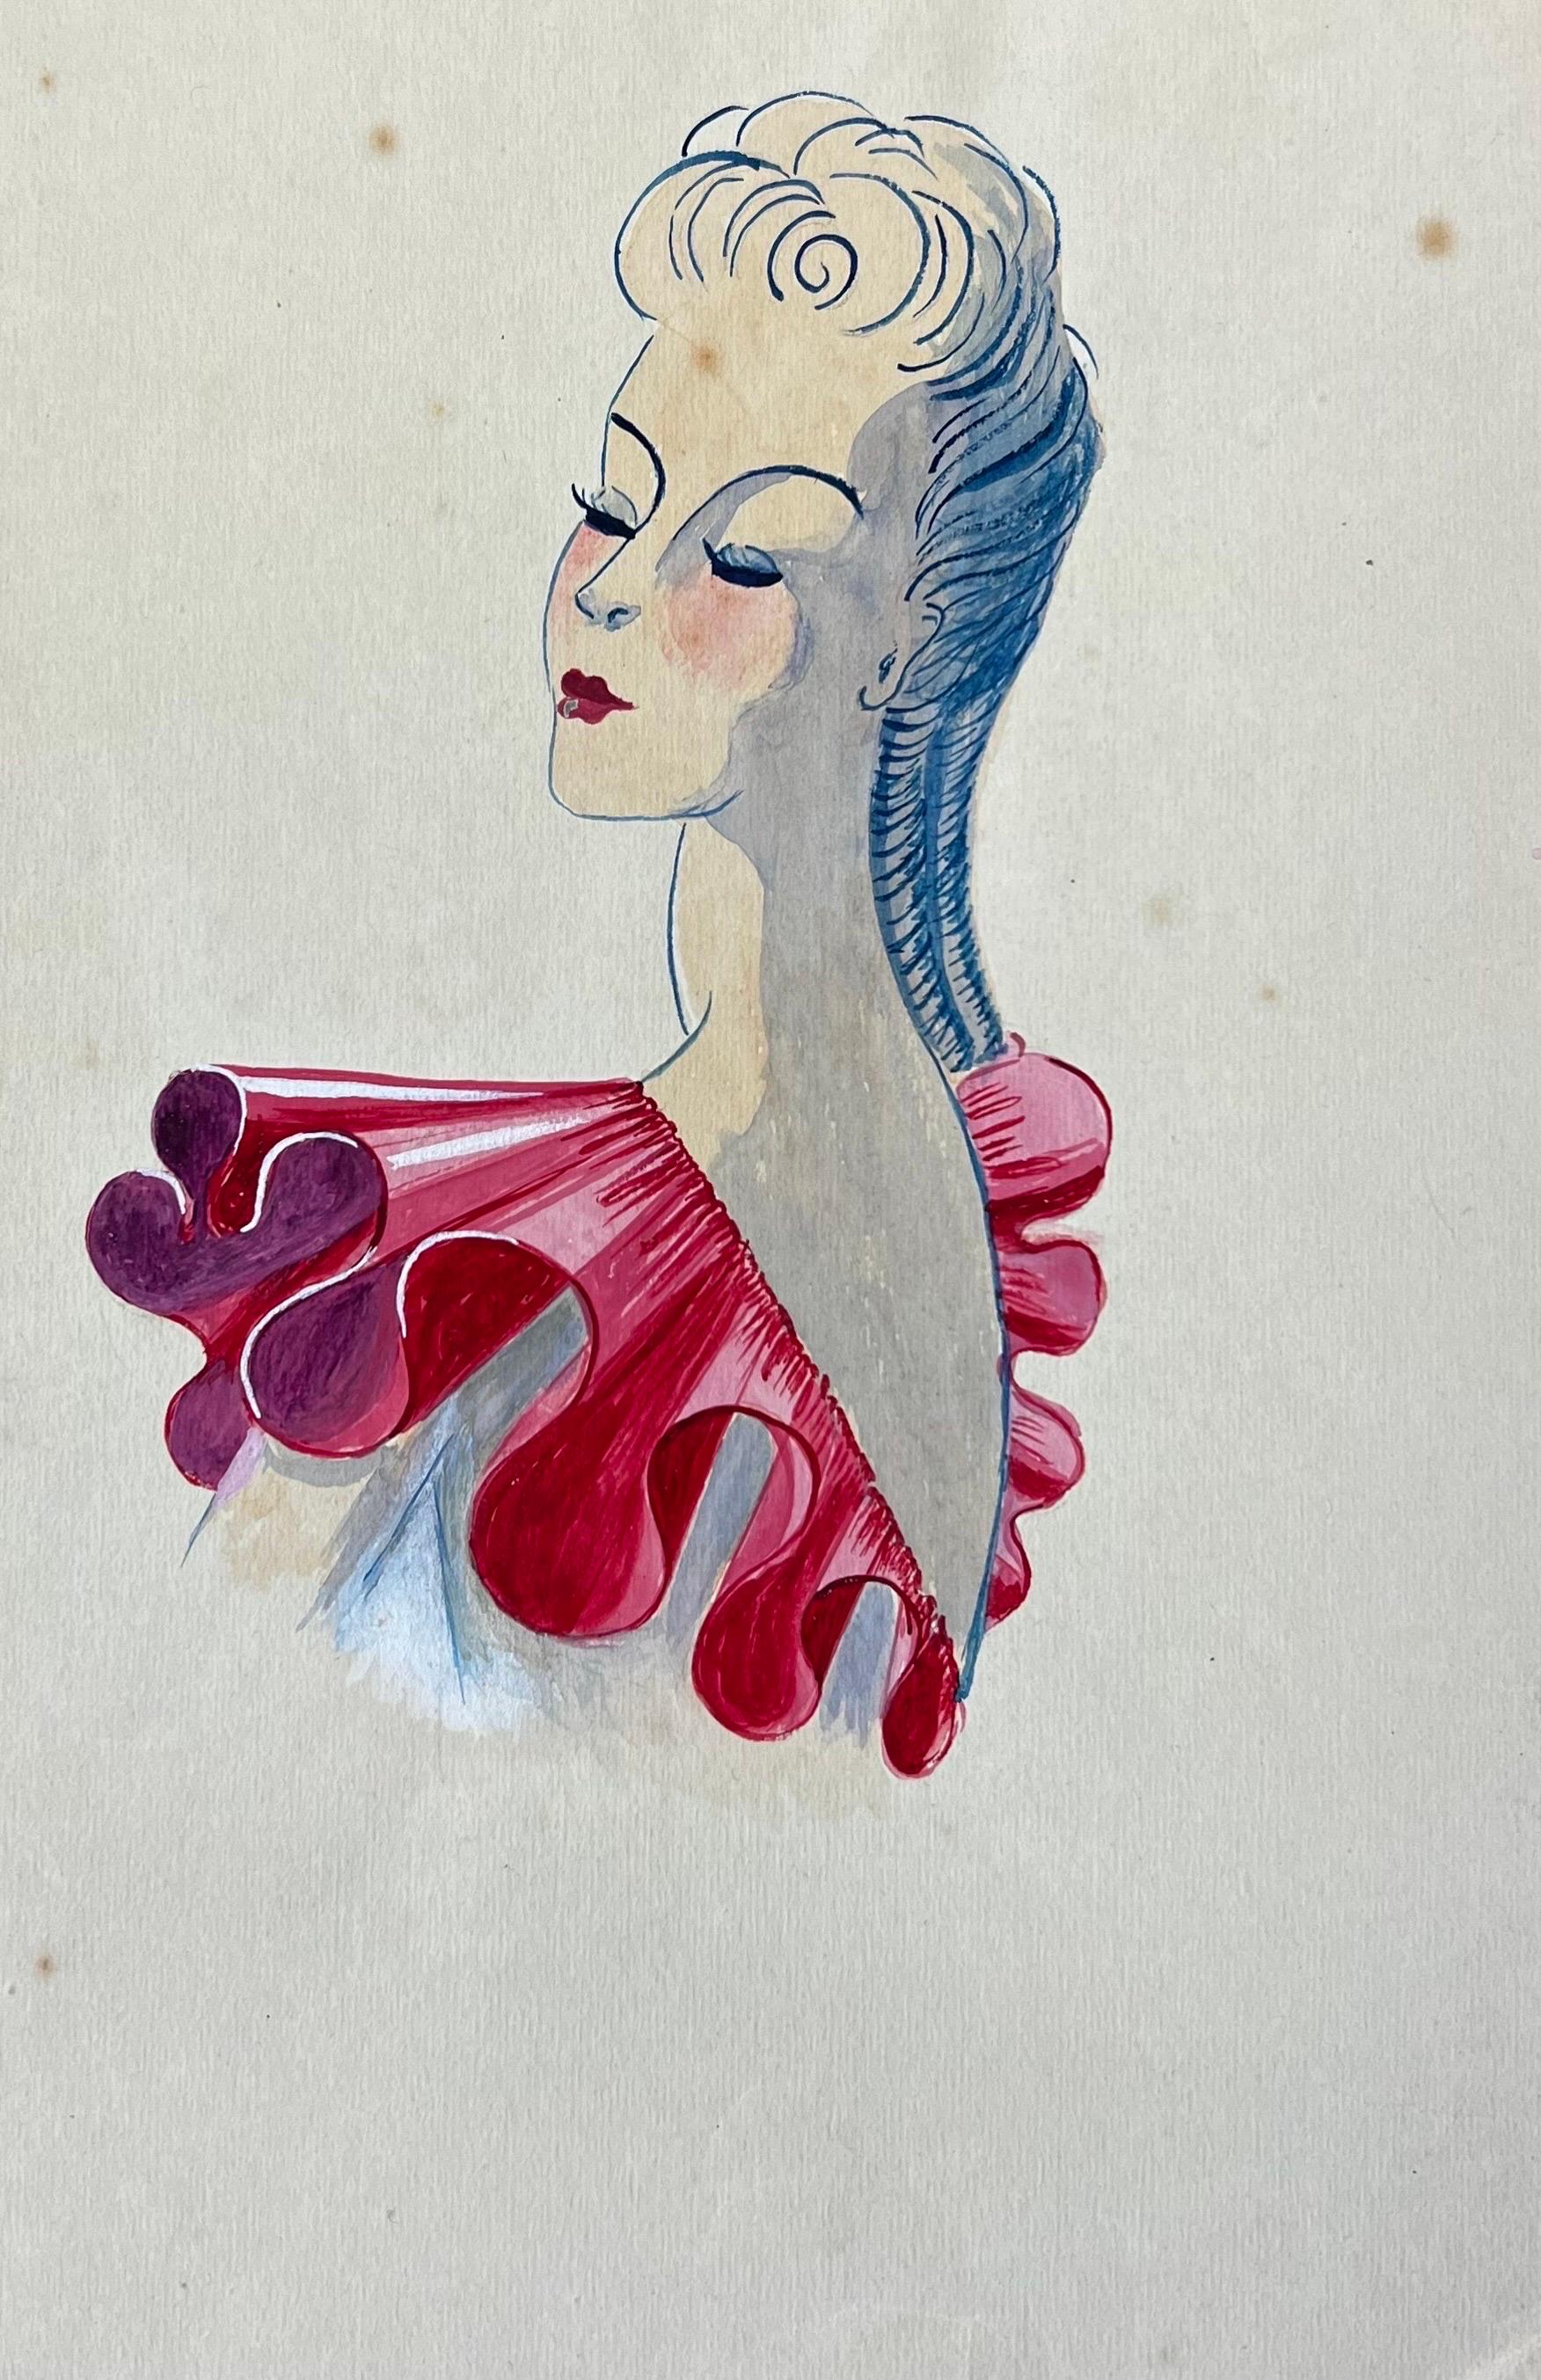 Sehr stilvolles, einzigartiges und originelles Modedesign aus den 1940er Jahren von der französischen Illustratorin Geneviève Thomas.

Das Gemälde, ausgeführt in Gouache und Bleistift.

Die Skizze ist original, Vintage und misst ungerahmt 9 x